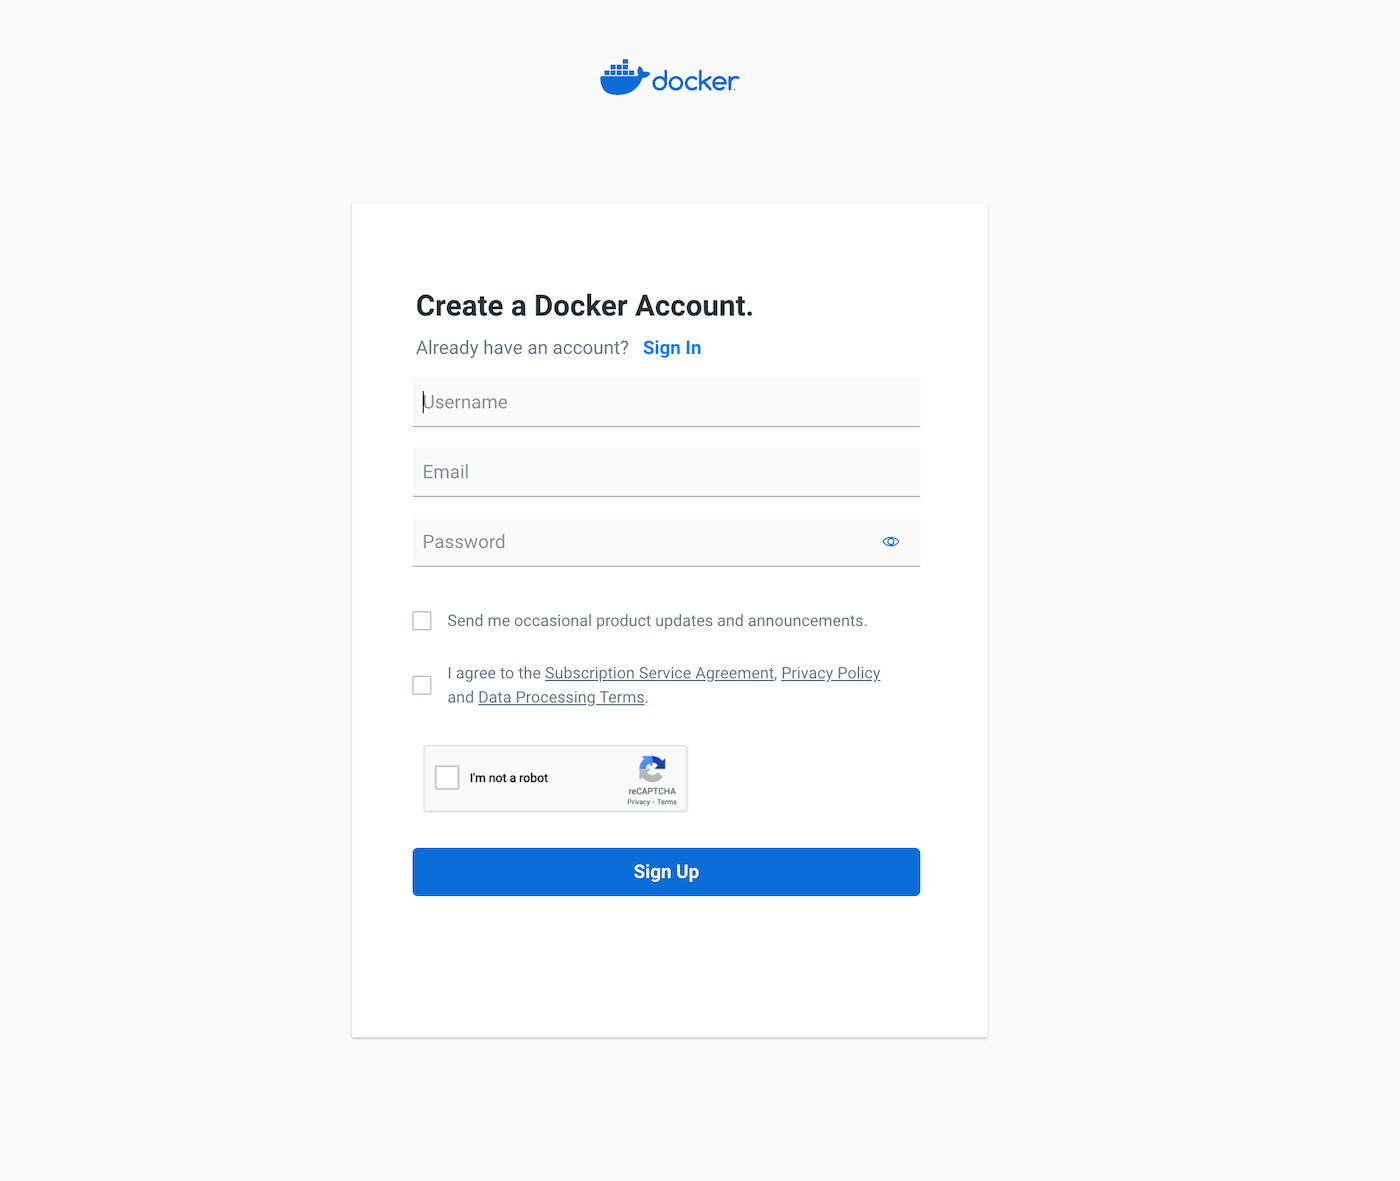 Modulo di Docker in cui inserire nome e email per creare l’account